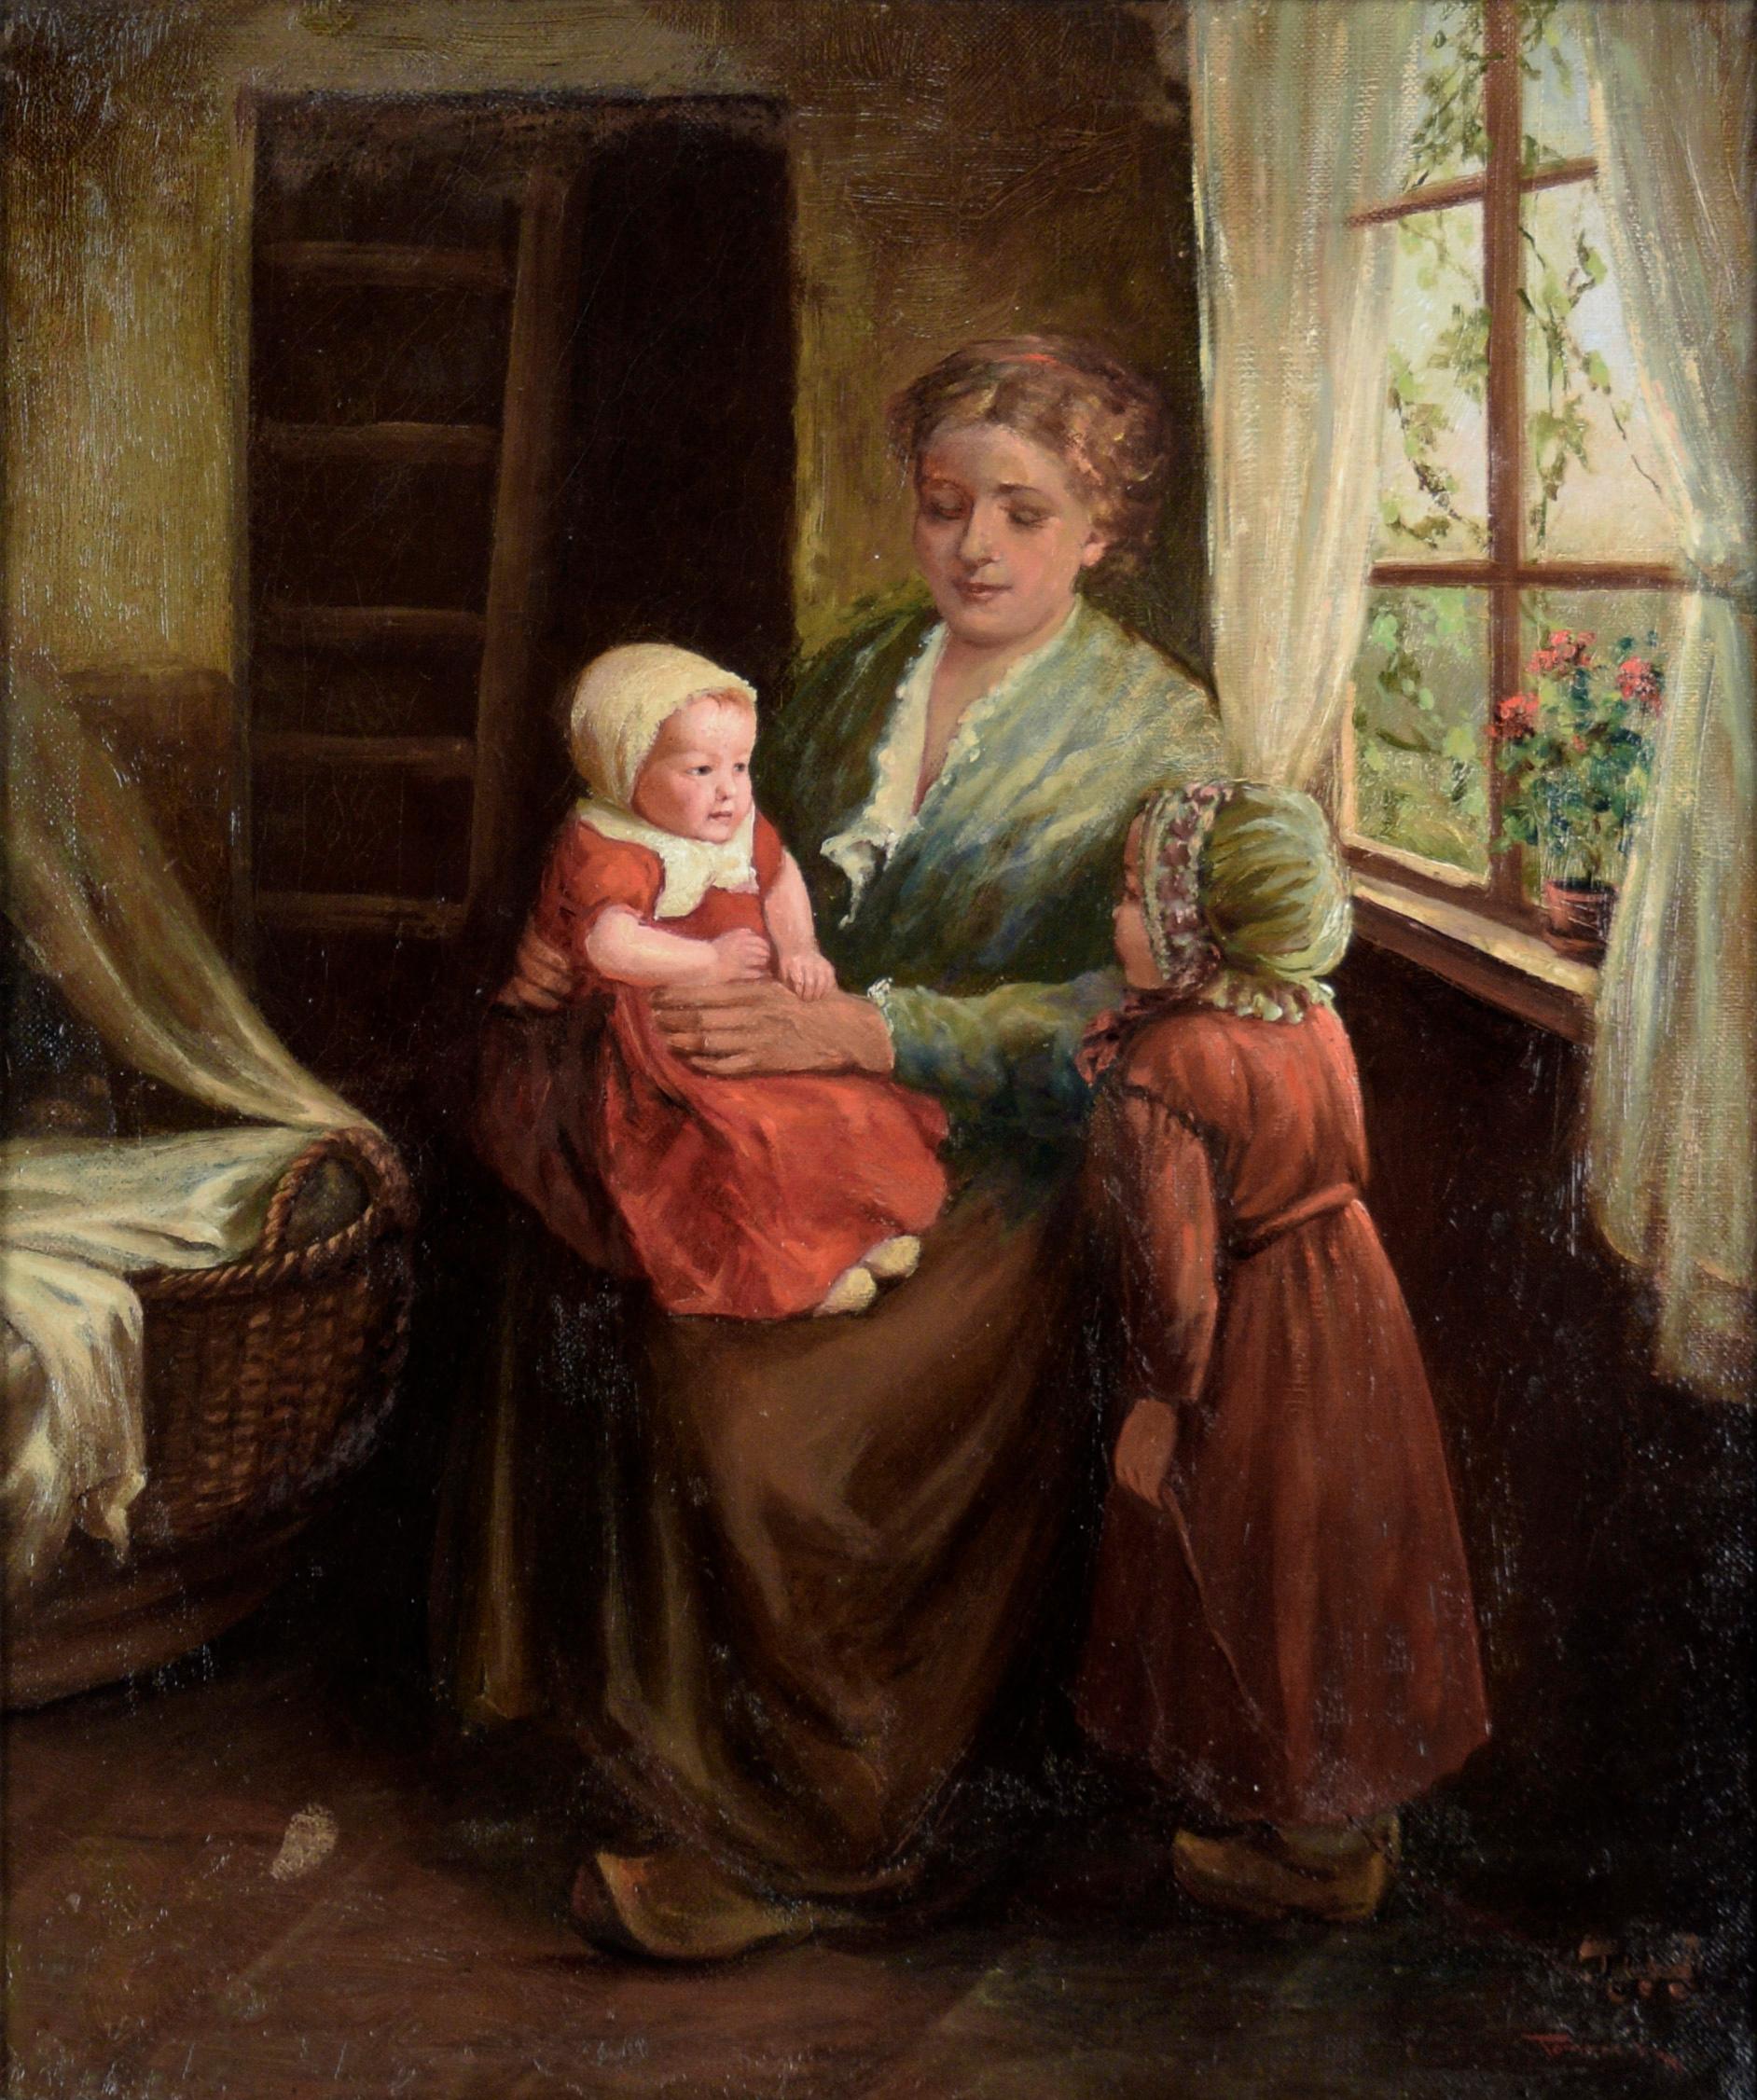 Frau mit zwei Kindern in Rot – Interieurszene im niederländischen Stil in Öl auf Leinwand – Painting von Joseph Tomanek